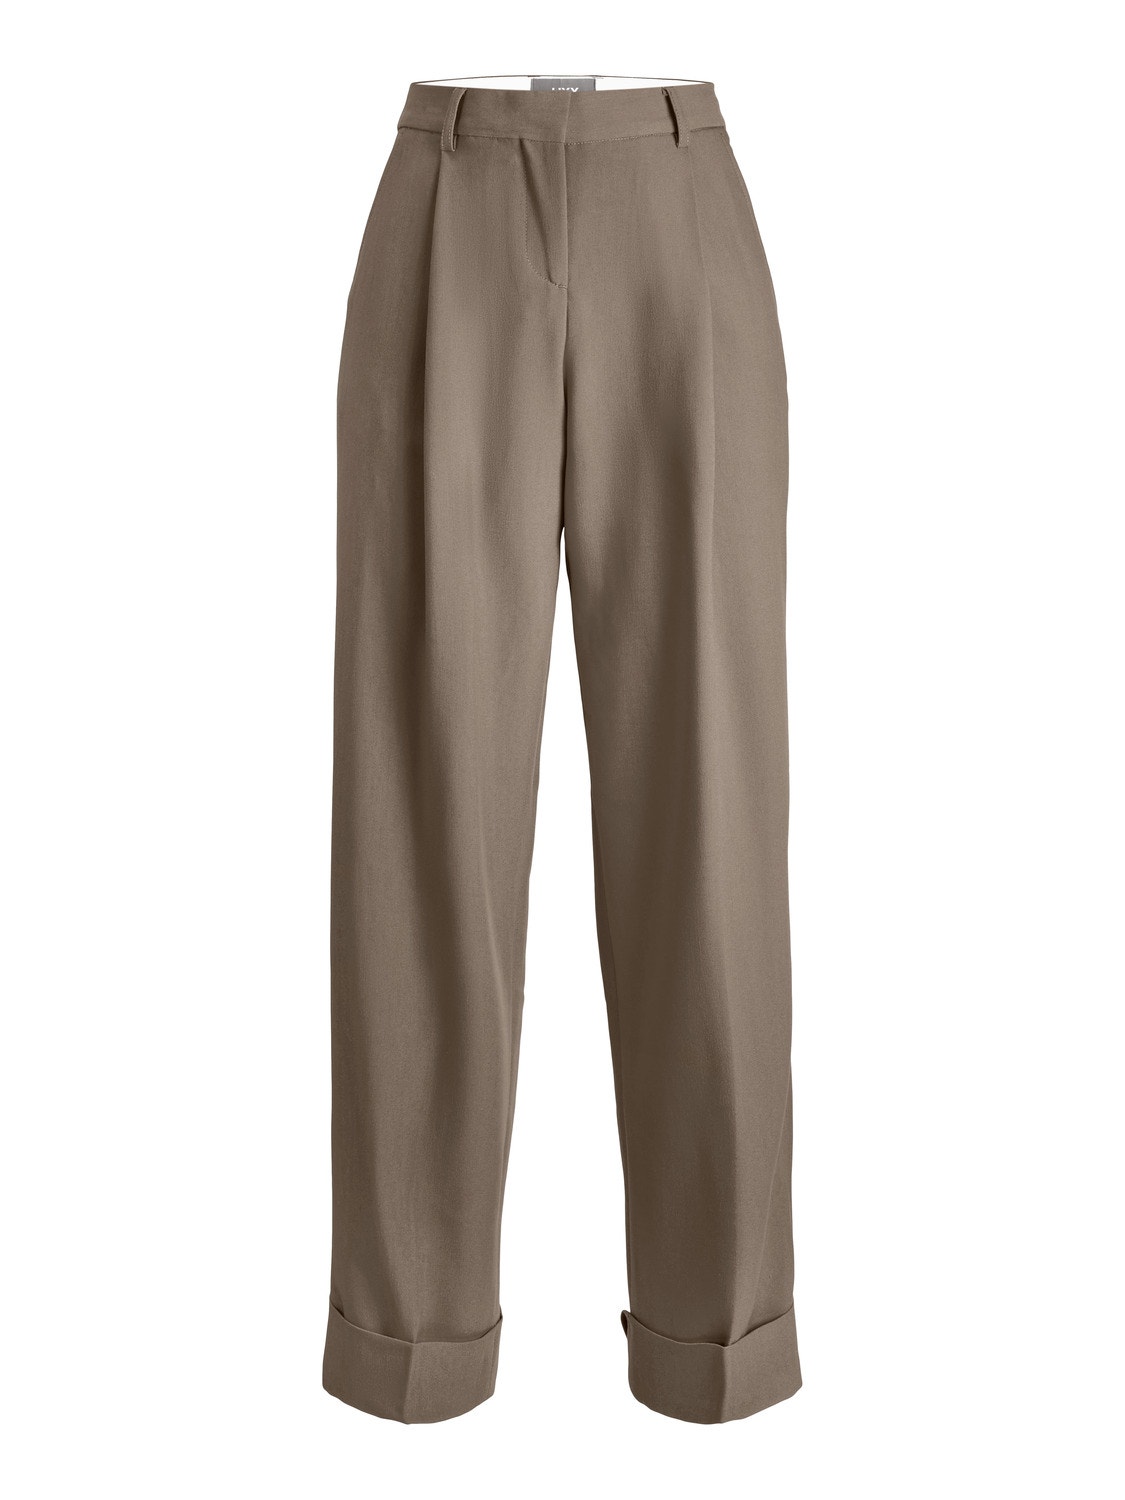 JJXX JXMARY Fold-up Klasické kalhoty -Brindle - 12236944